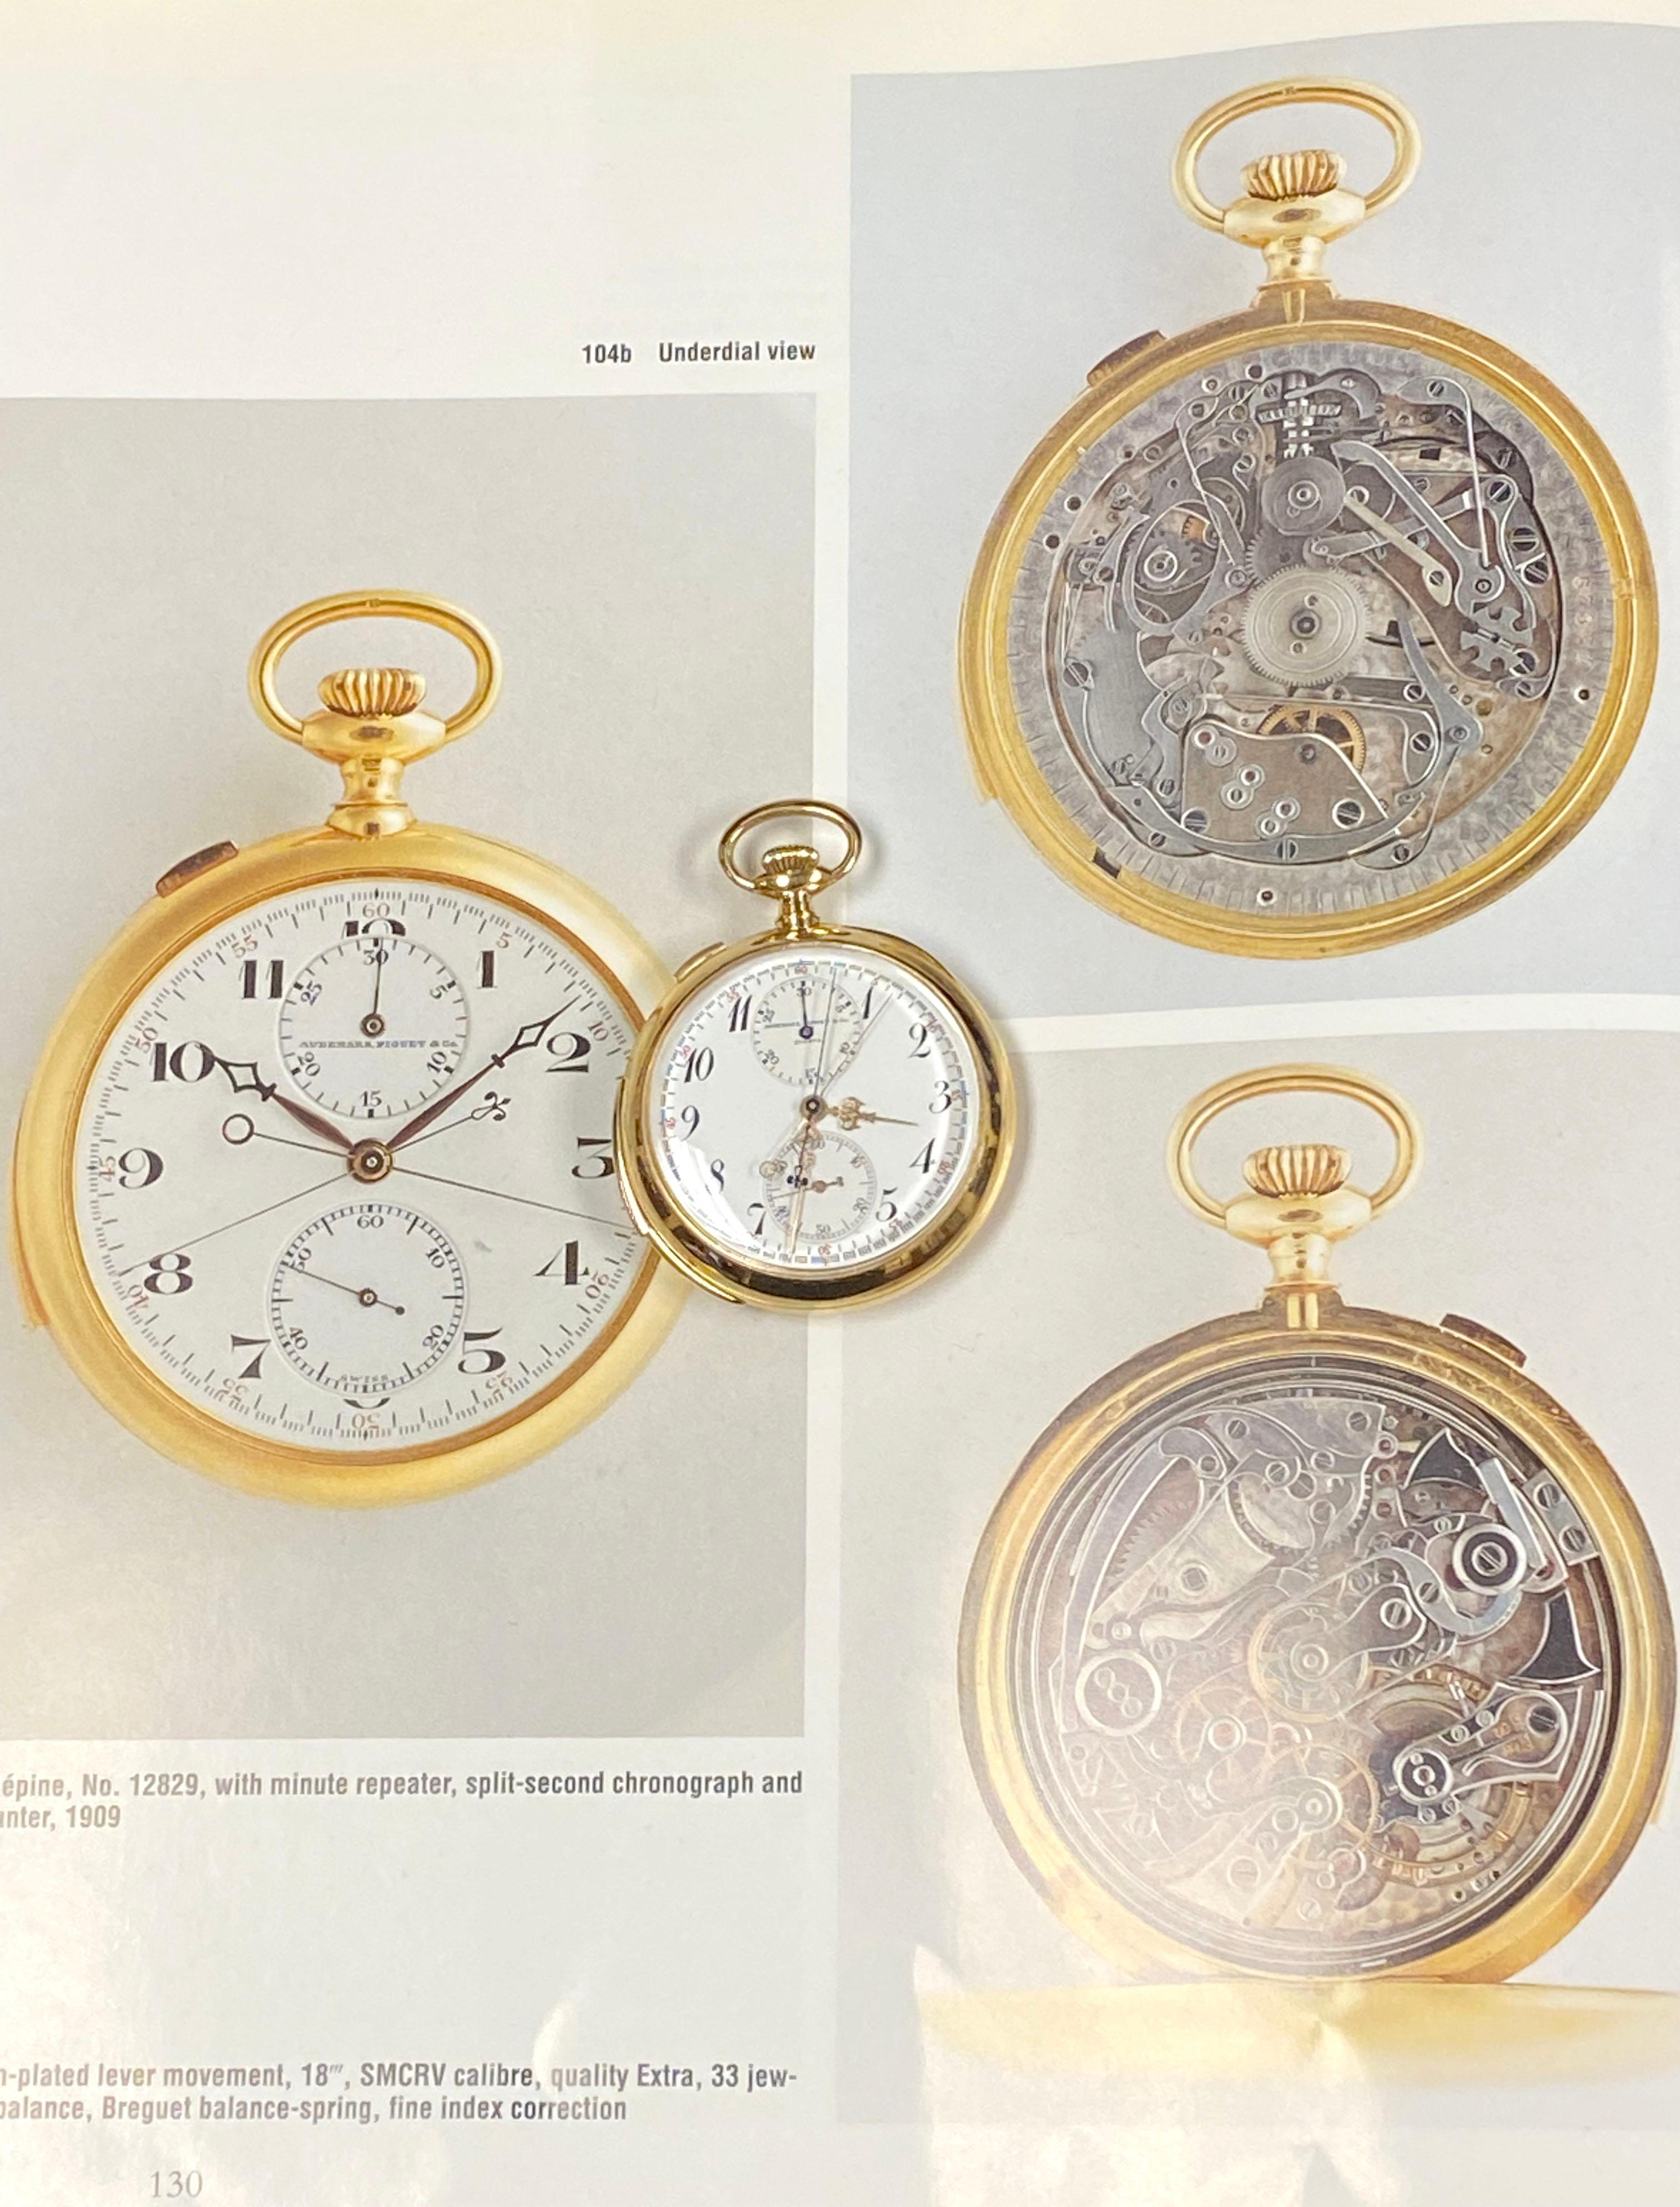 Audemars Piguet Minutenrepetition Chronograph Taschenuhr Historische Präsentation 2